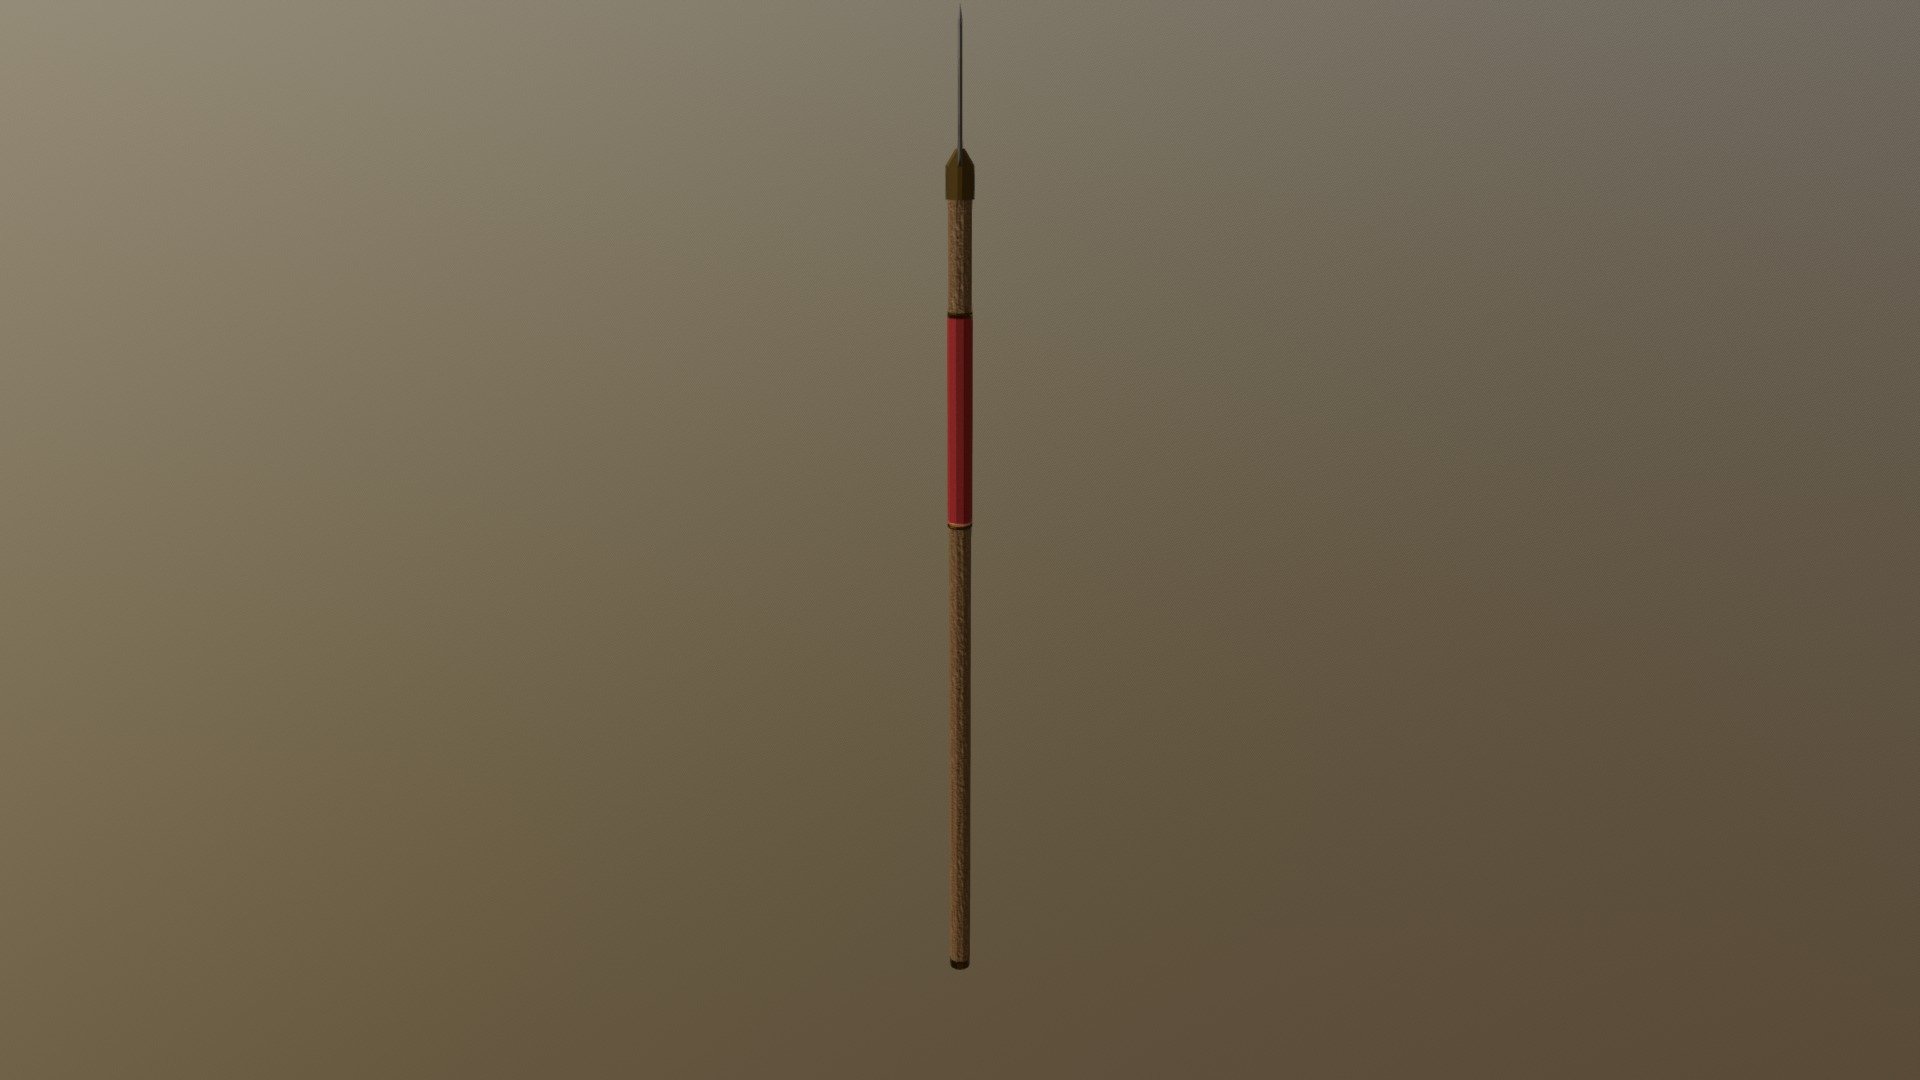 egyptian spear - 3D model by aconti98 3d model